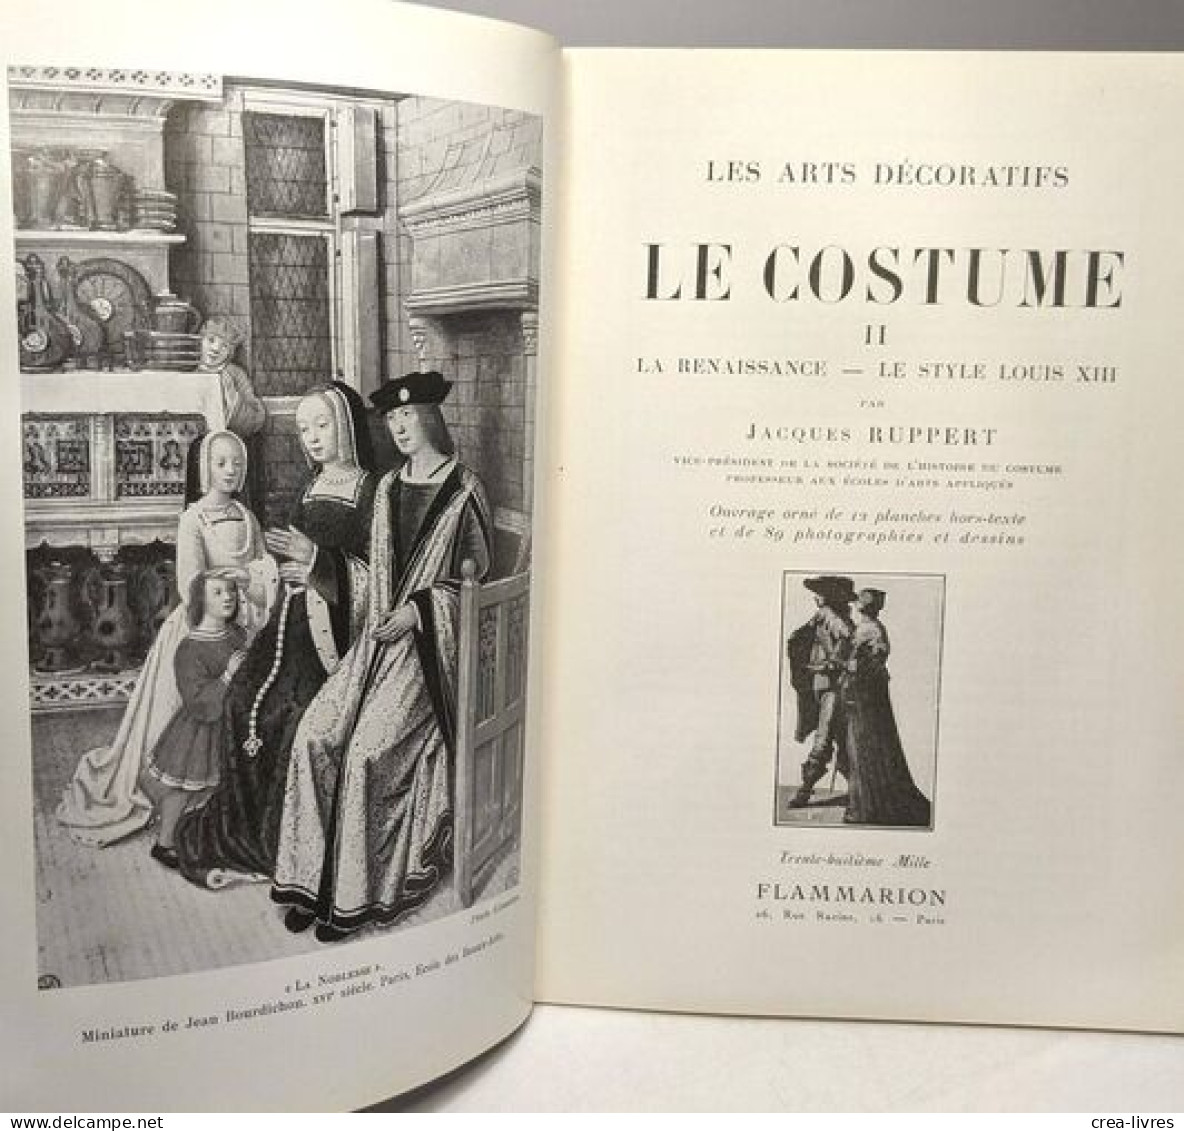 Le Costume - 2/ Renaissance Louis XIII (1963) + 3 Louis XIV Louis XV (1968) - Art